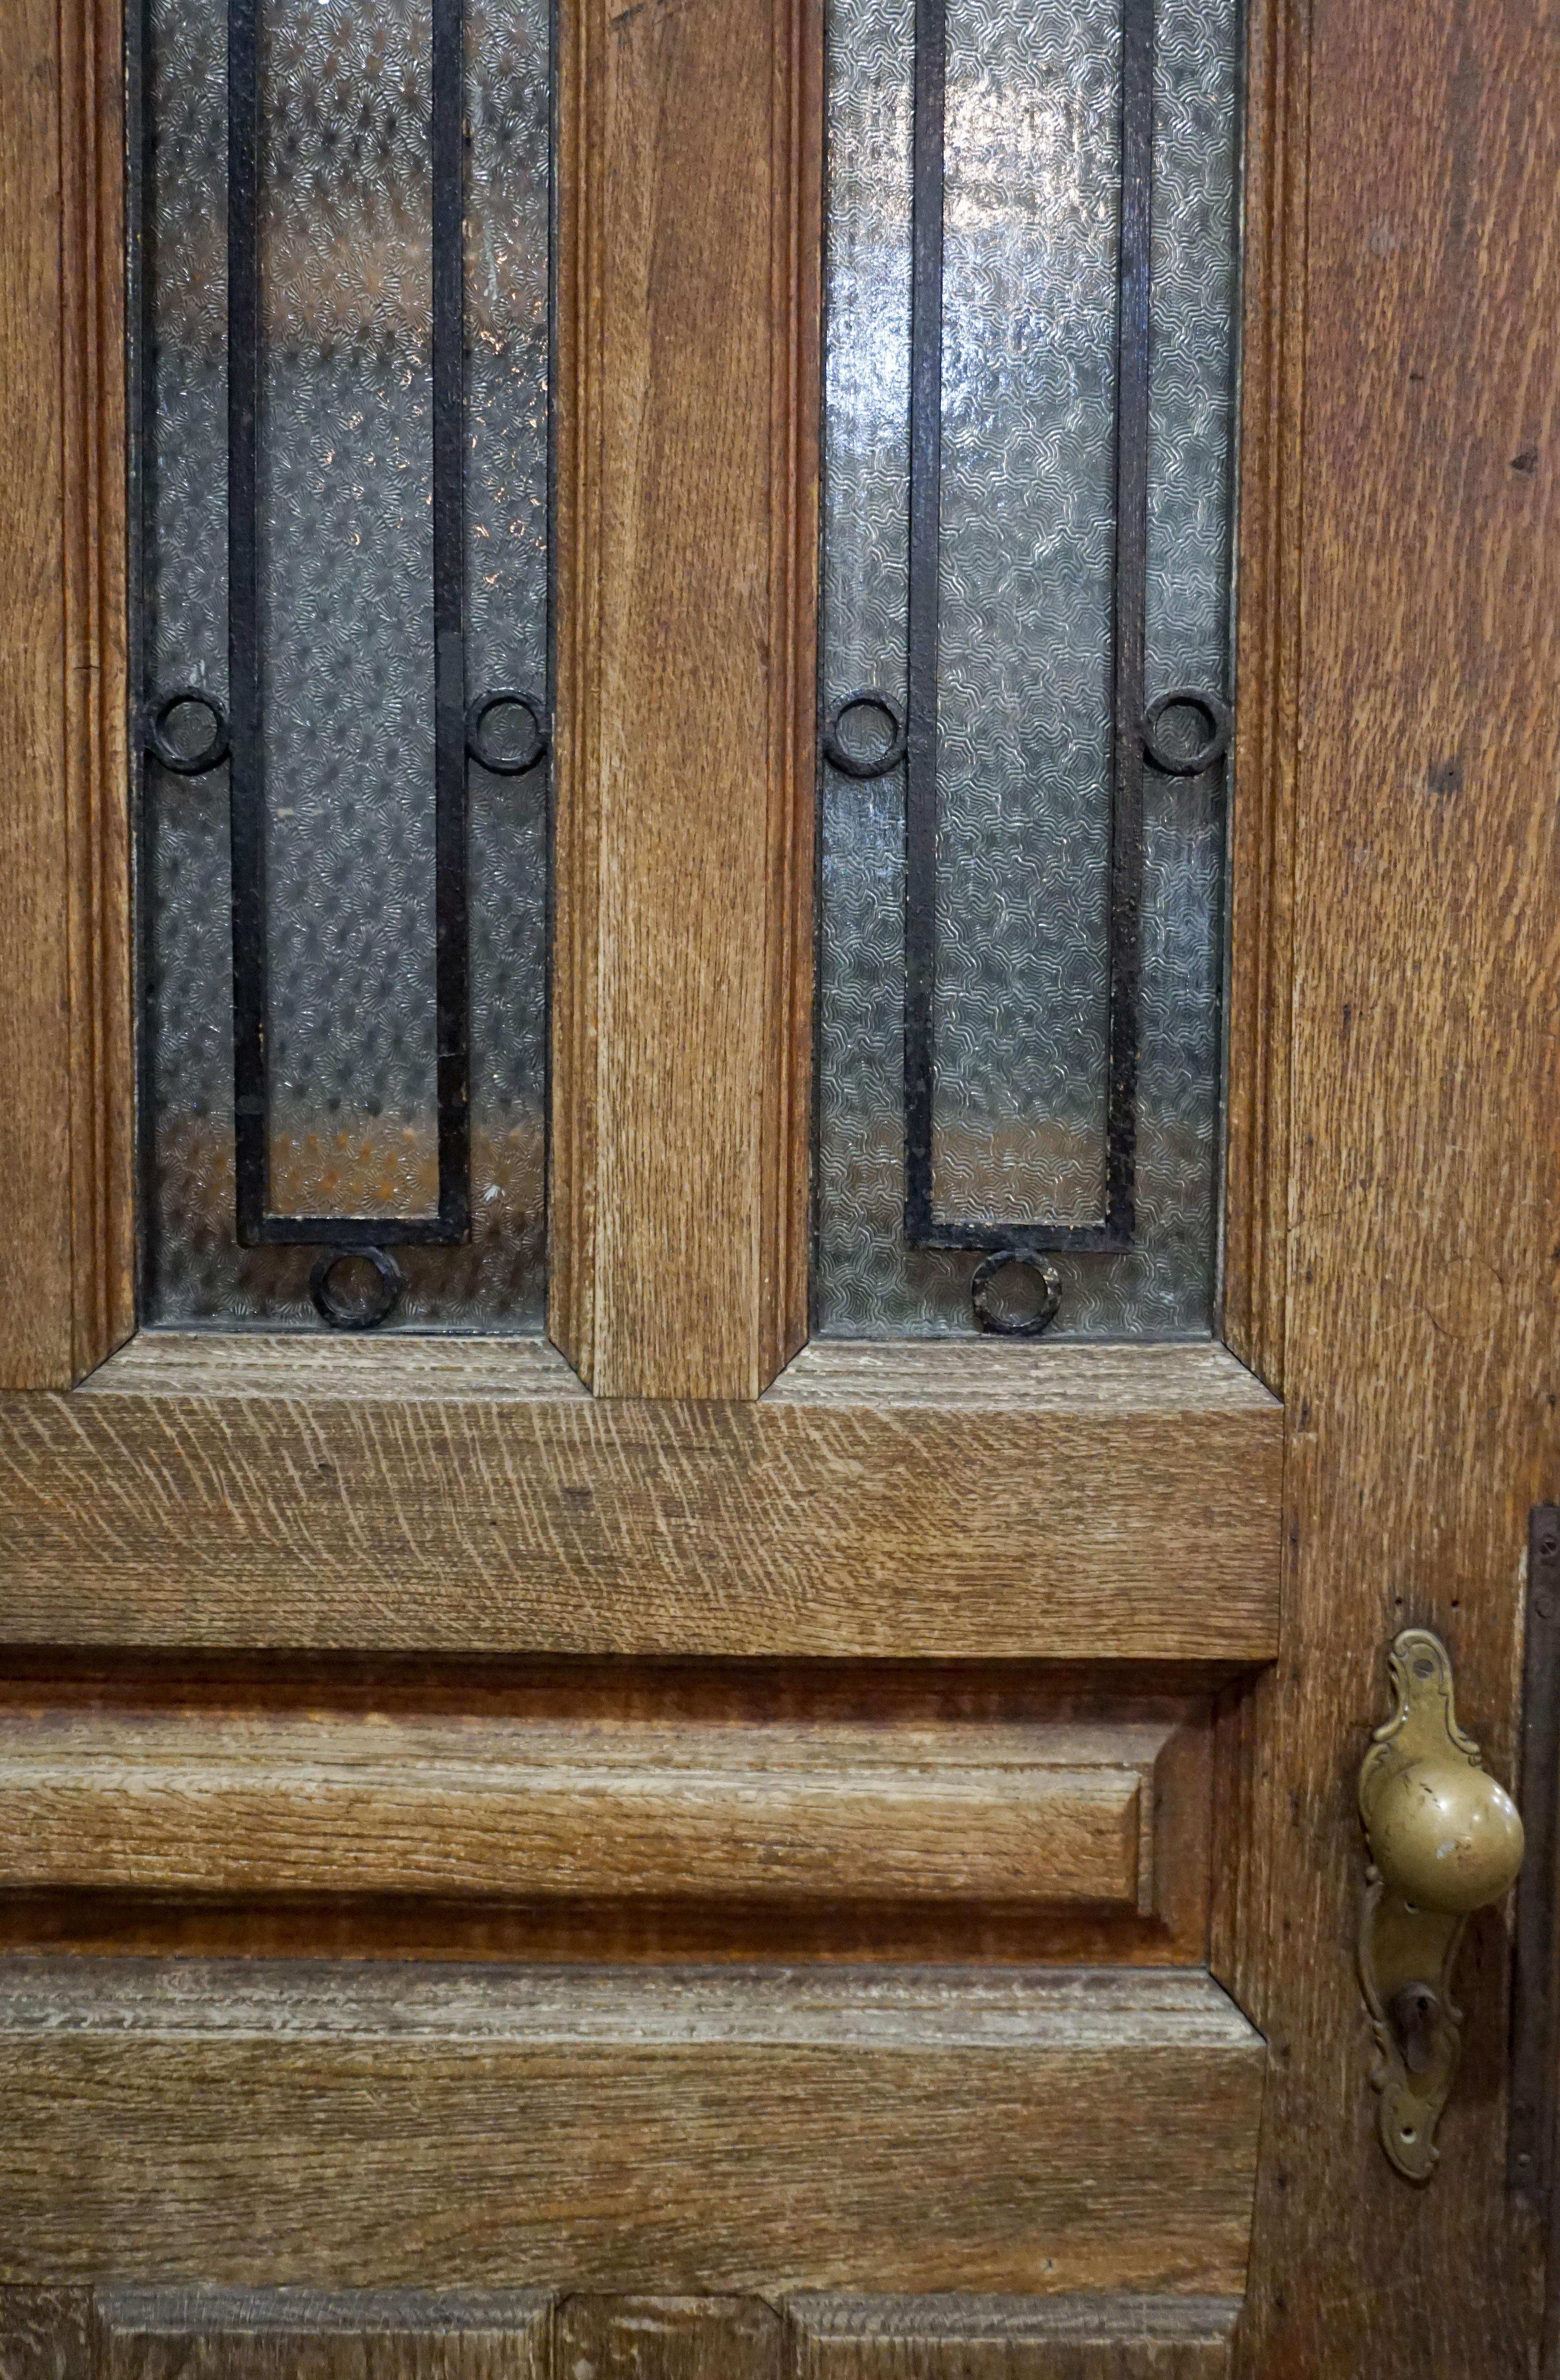 En provenance de France, nous avons cette impressionnante porte simple avec ferronnerie. Les trois panneaux de fenêtre s'ouvrent chacun pour permettre à la brise agréable de l'extérieur de pénétrer dans votre maison. Cette porte est en très bon état